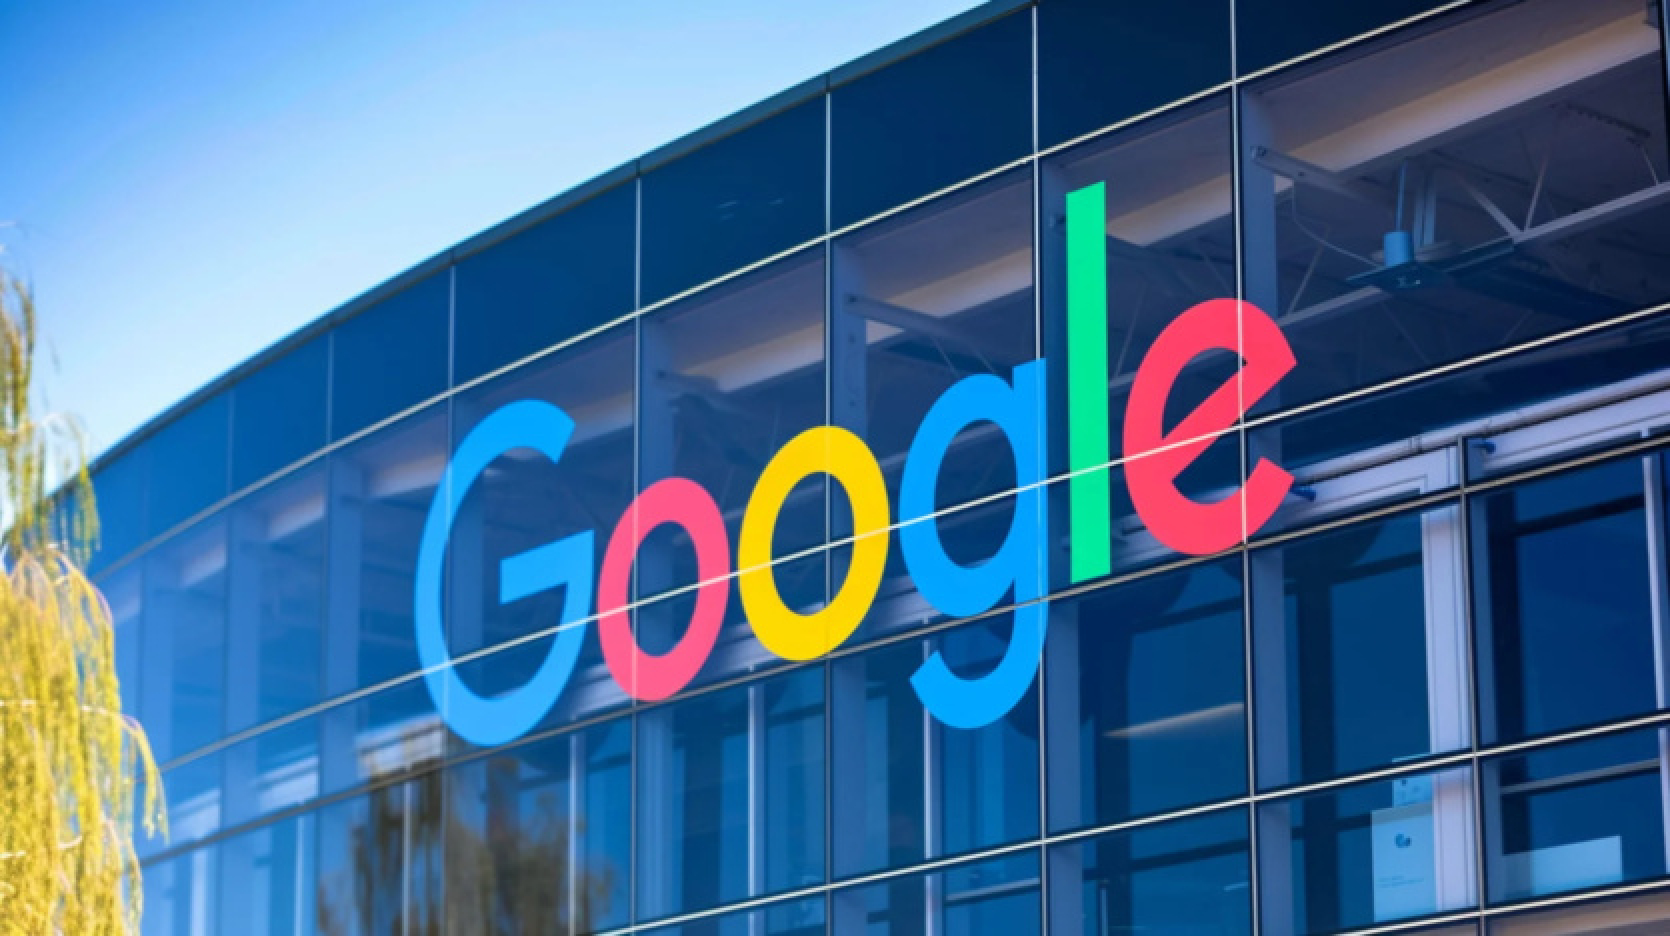 Google vērtība ir pārsniegusi 2 triljonus ASV dolāru - uzņēmums paziņoja par pirmo dividenžu izmaksu 25 gadu laikā.